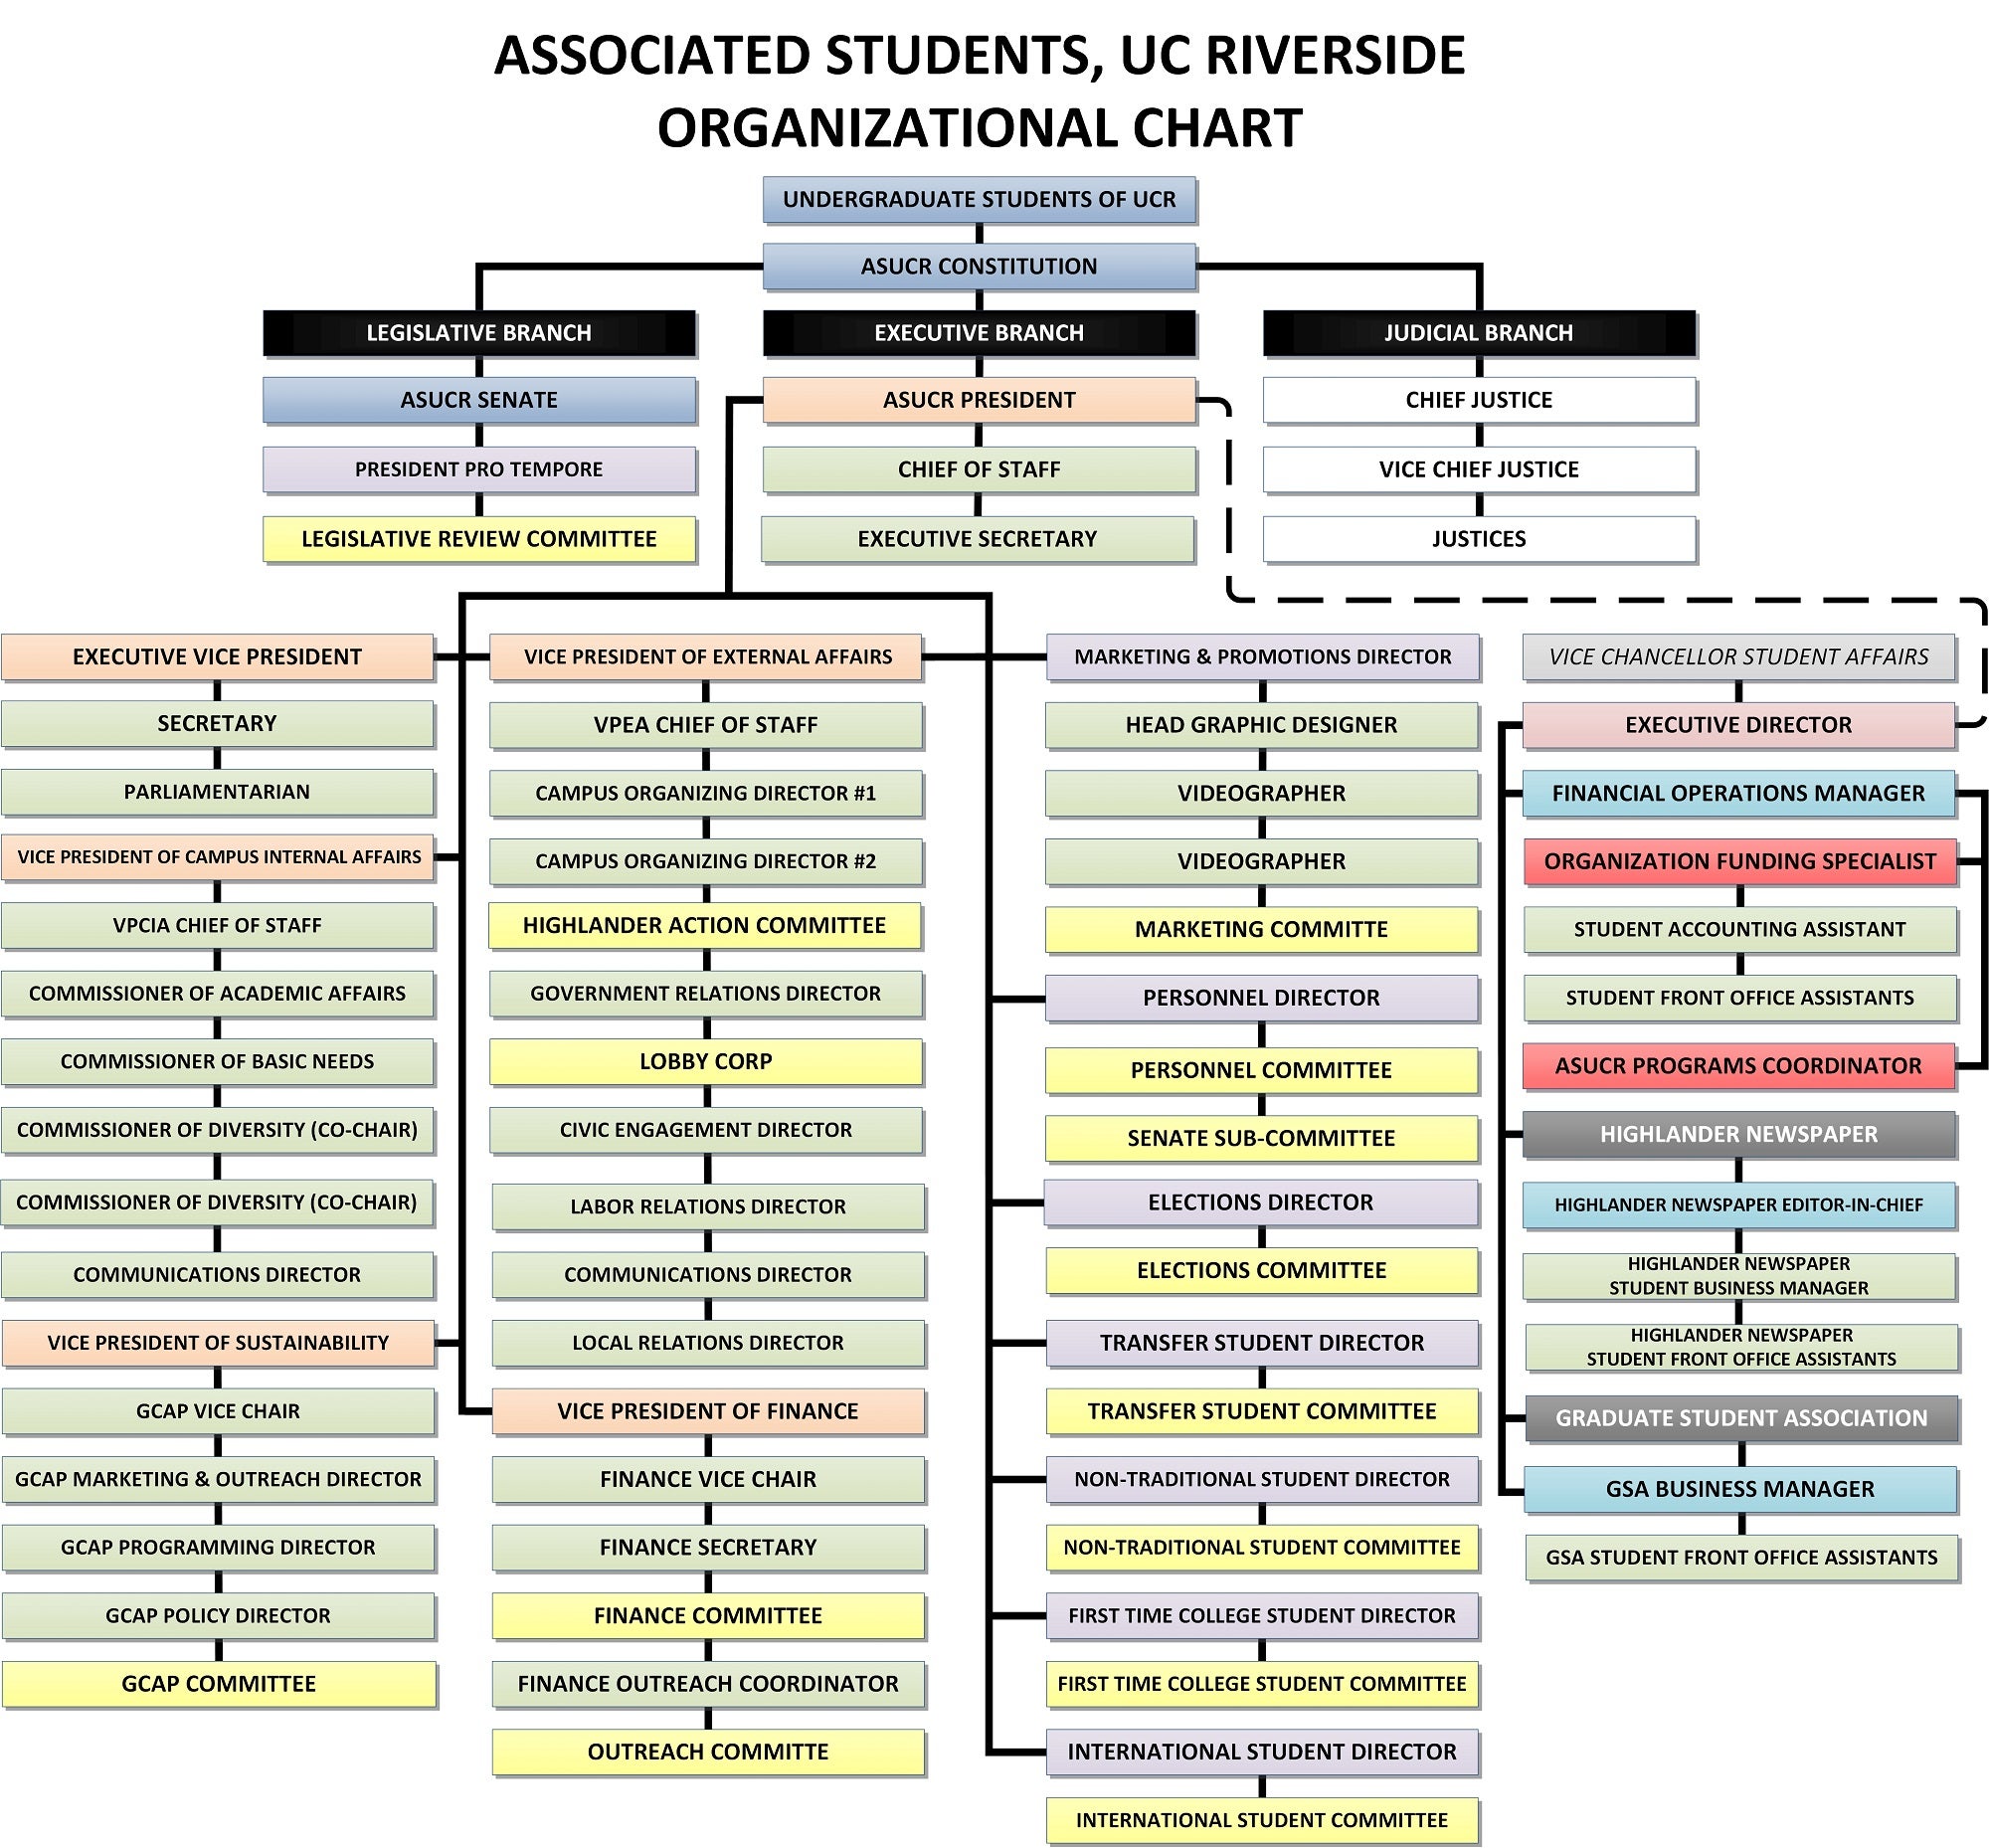 ASUCR Organizational Chart